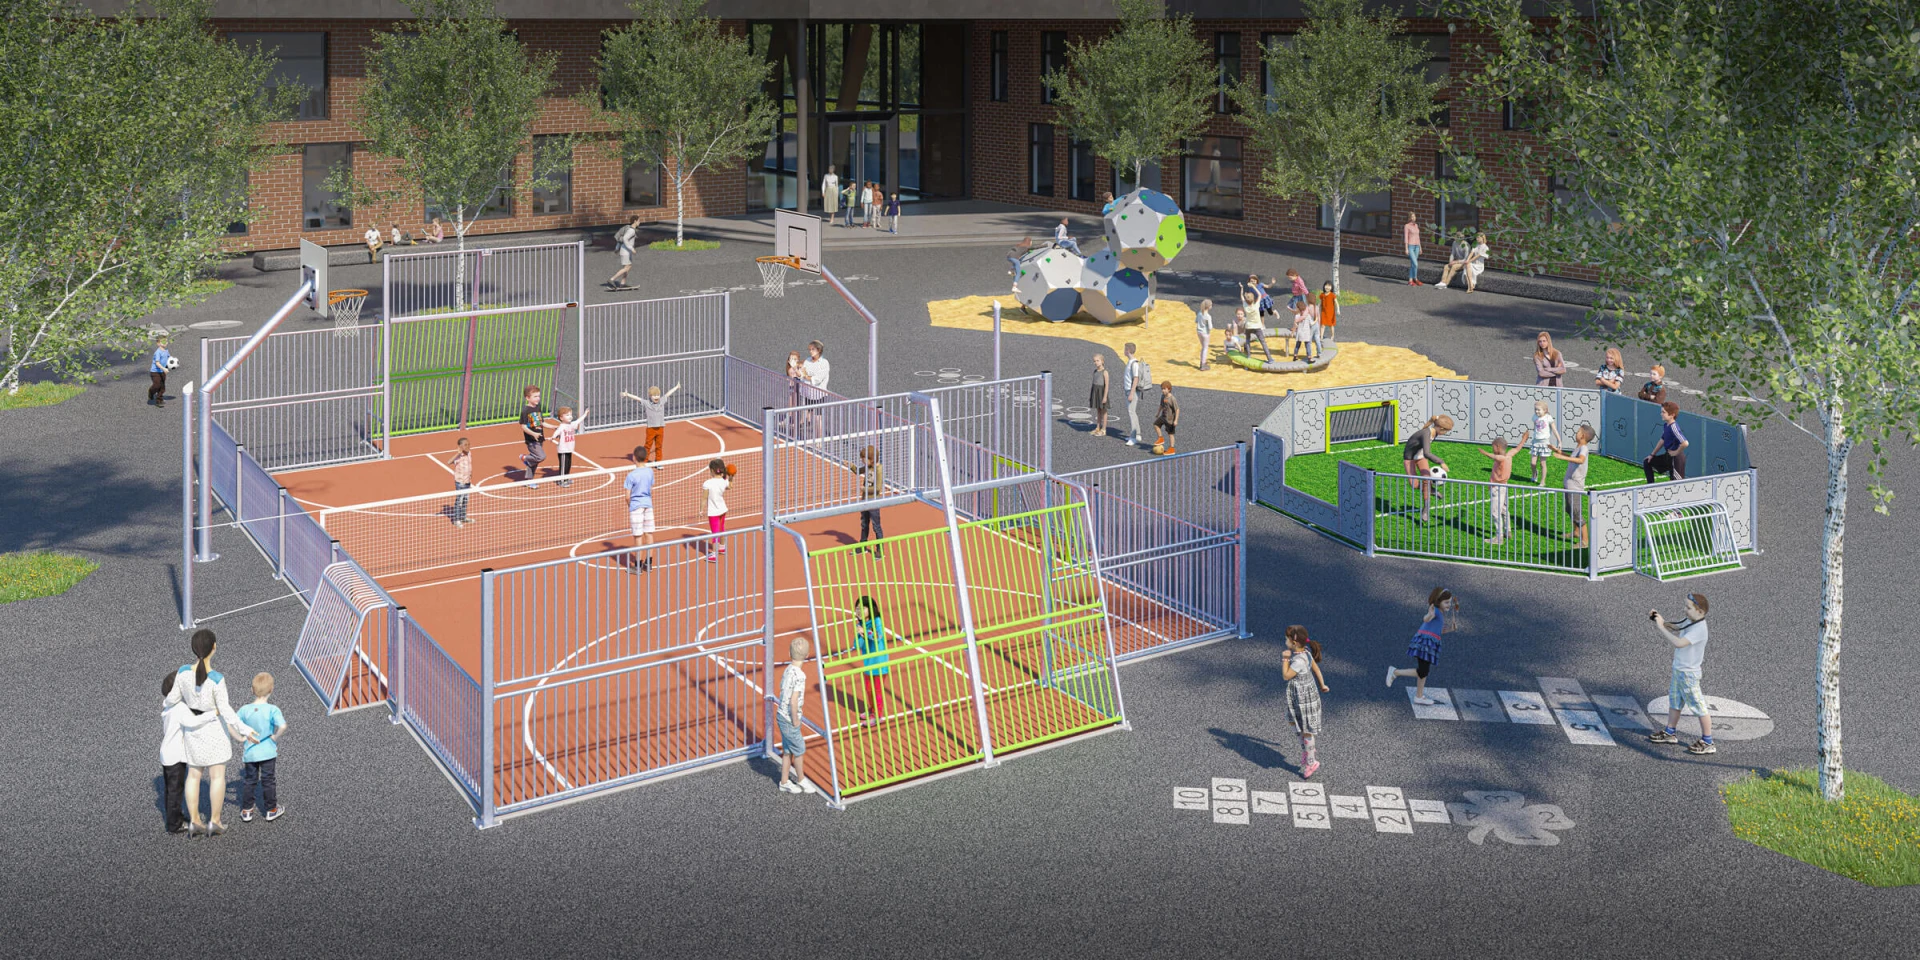 Idea de diseño de un patio escolar con zonas de juegos para varios balones